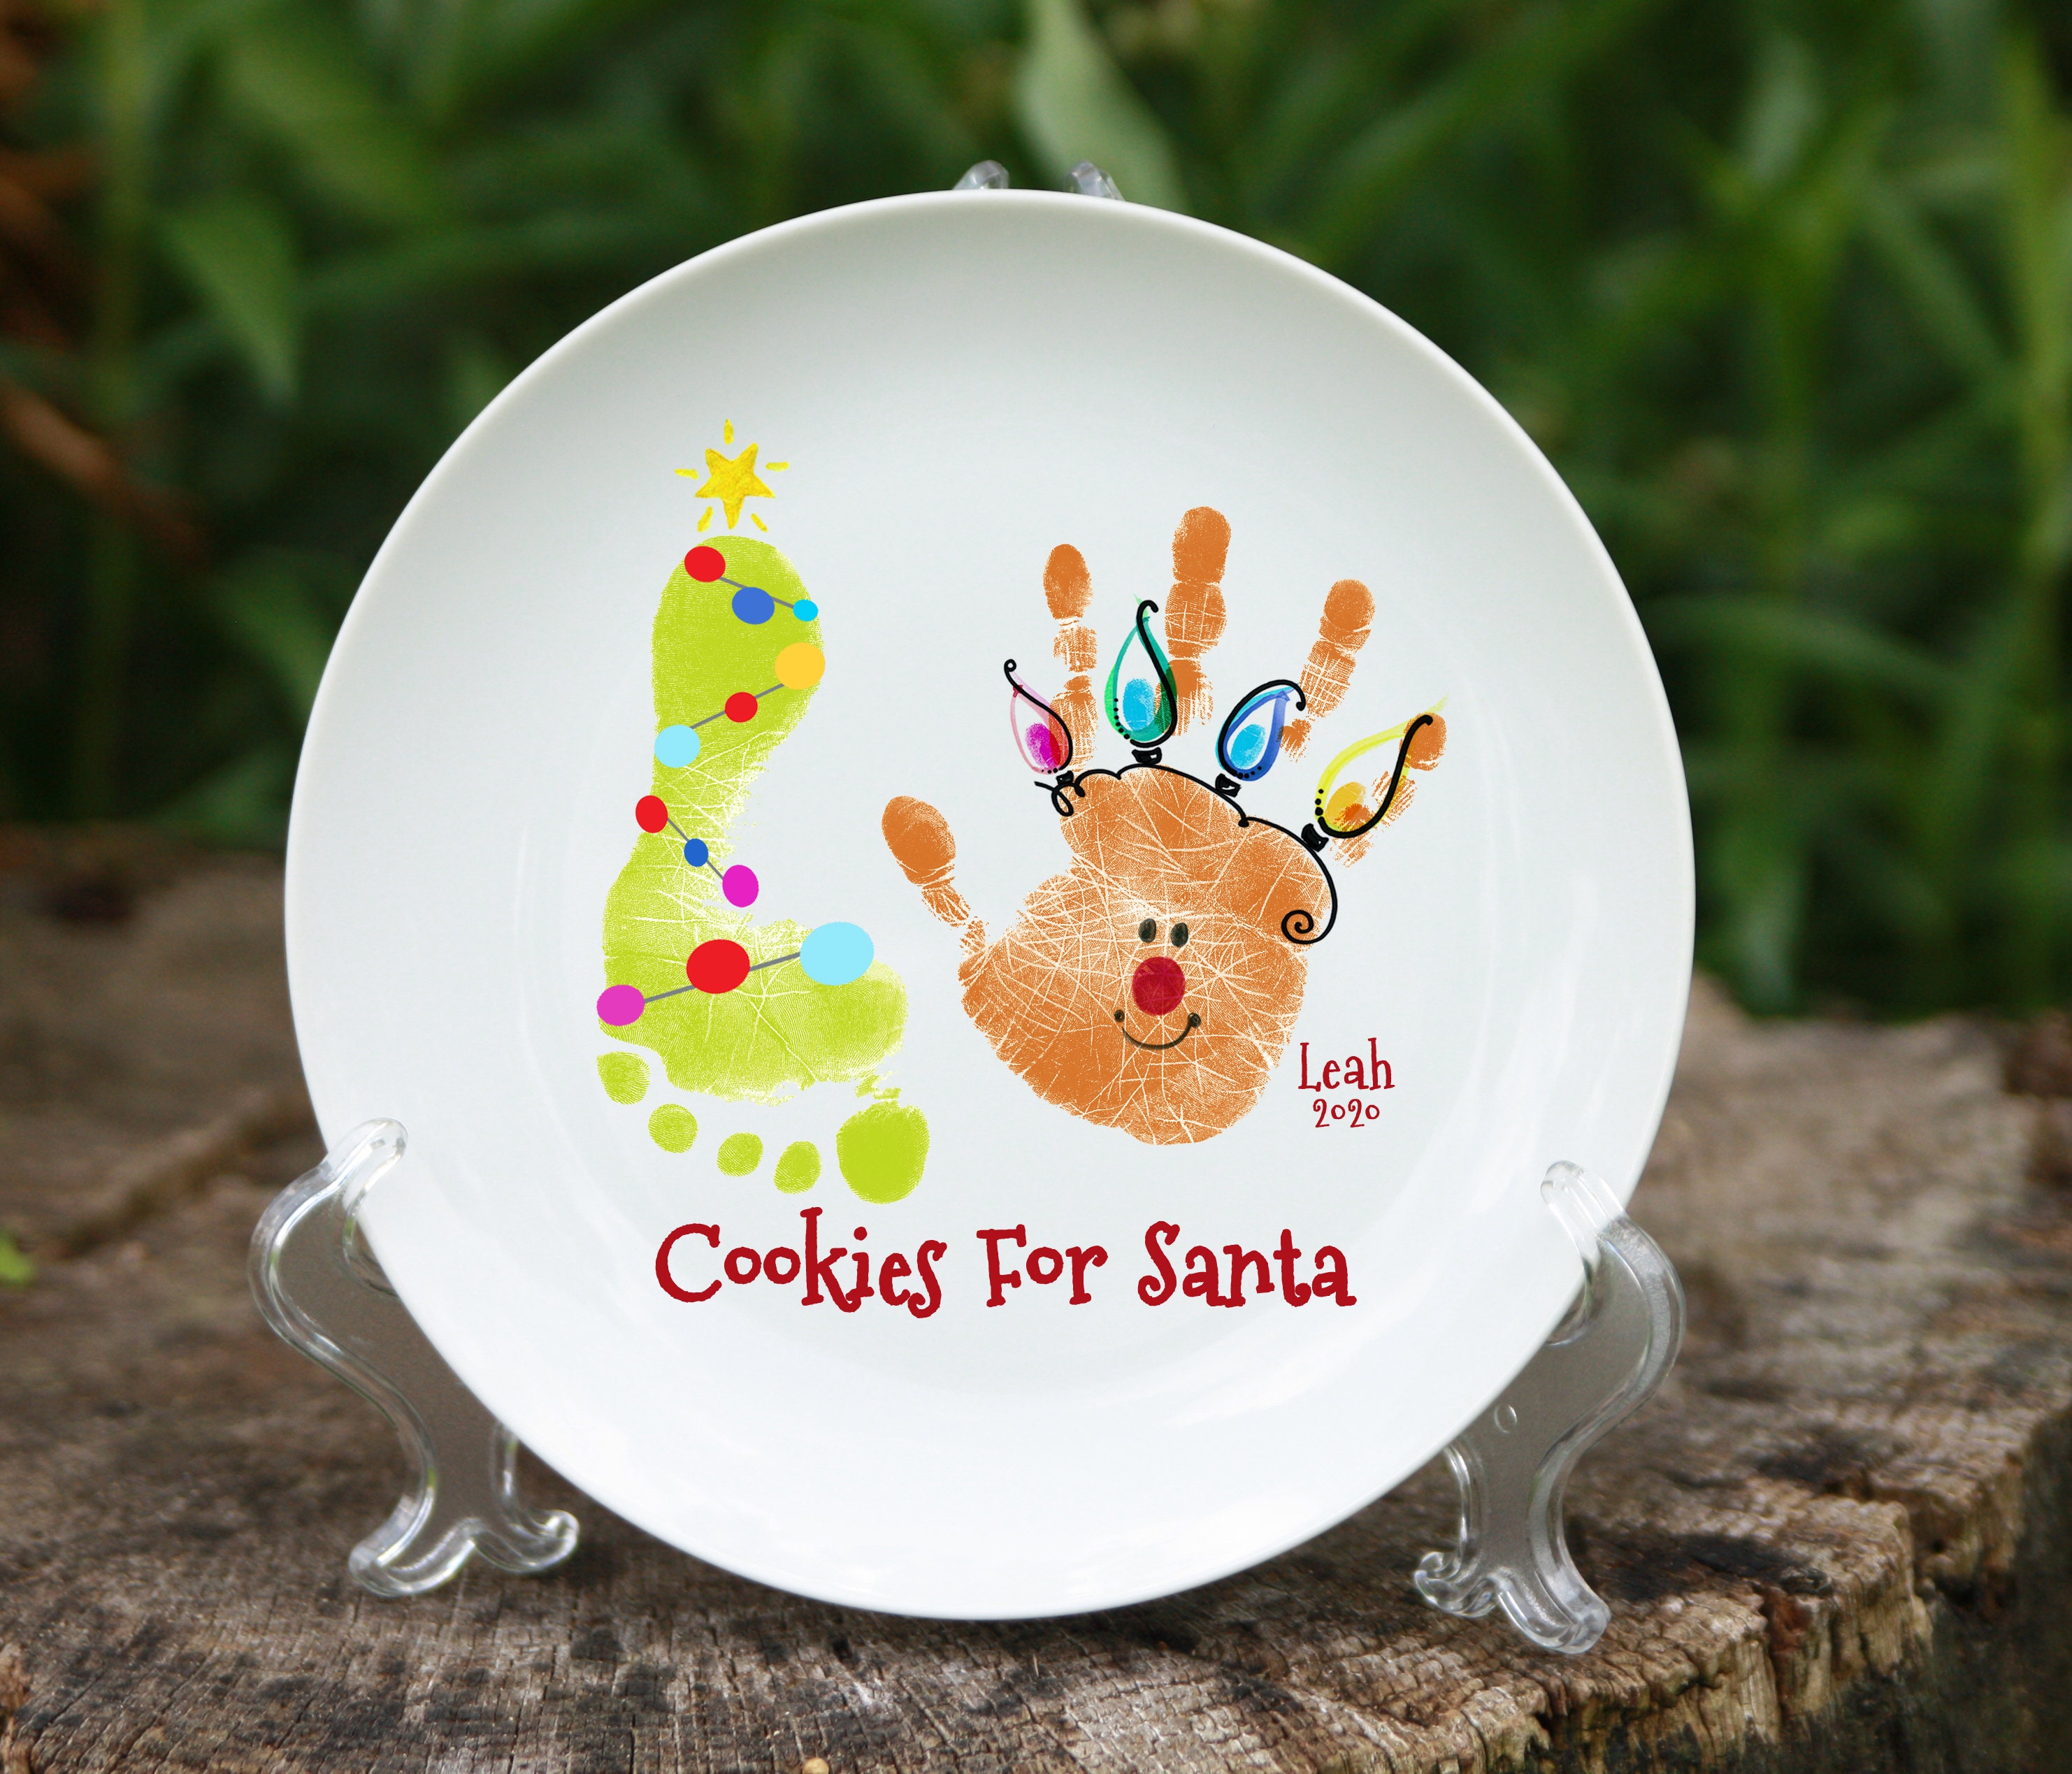 Cookies For Santa Plate Christmas Gifts Mom & Dad, Footprint Art Keepsake Tree Footprint Reindeer Handprint